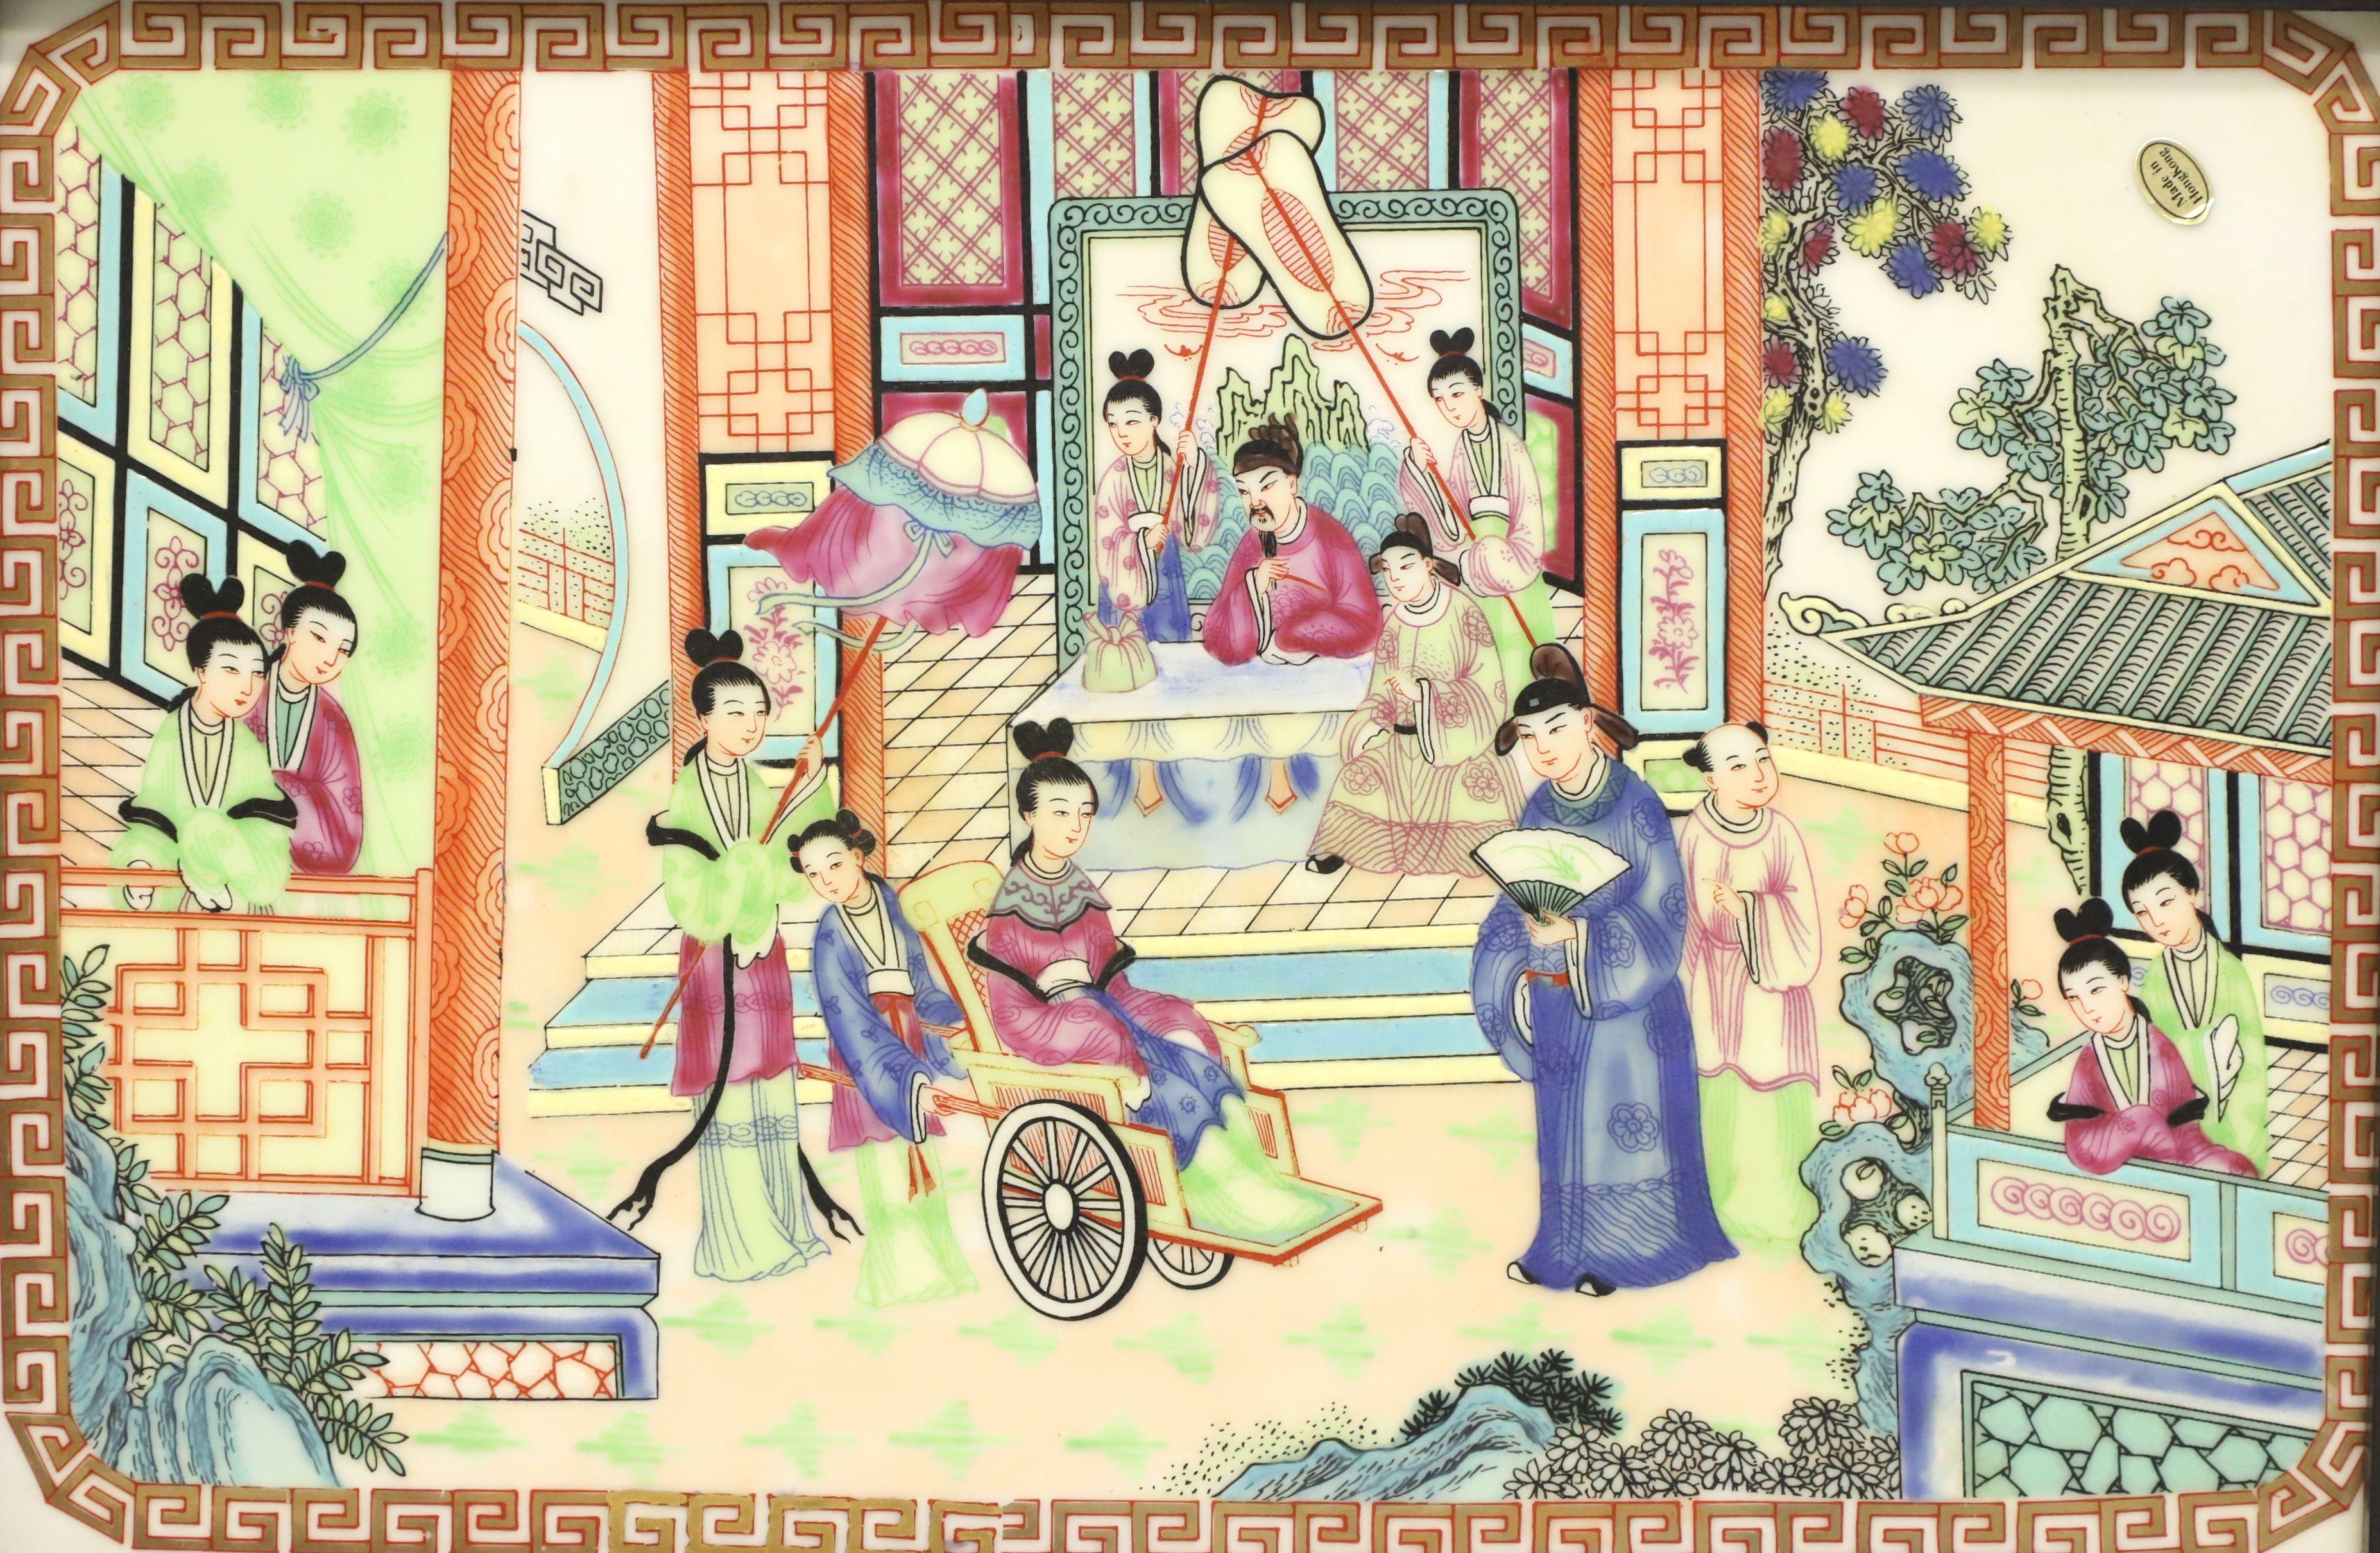 Paire de carreaux de porcelaine de style asiatique japonais encadrés, sans marque. Porcelaine fine, peinte à la main d'une scène multicolore d'un village japonais, présentée dans des cadres en bois peints en noir avec des cintres en laiton de style